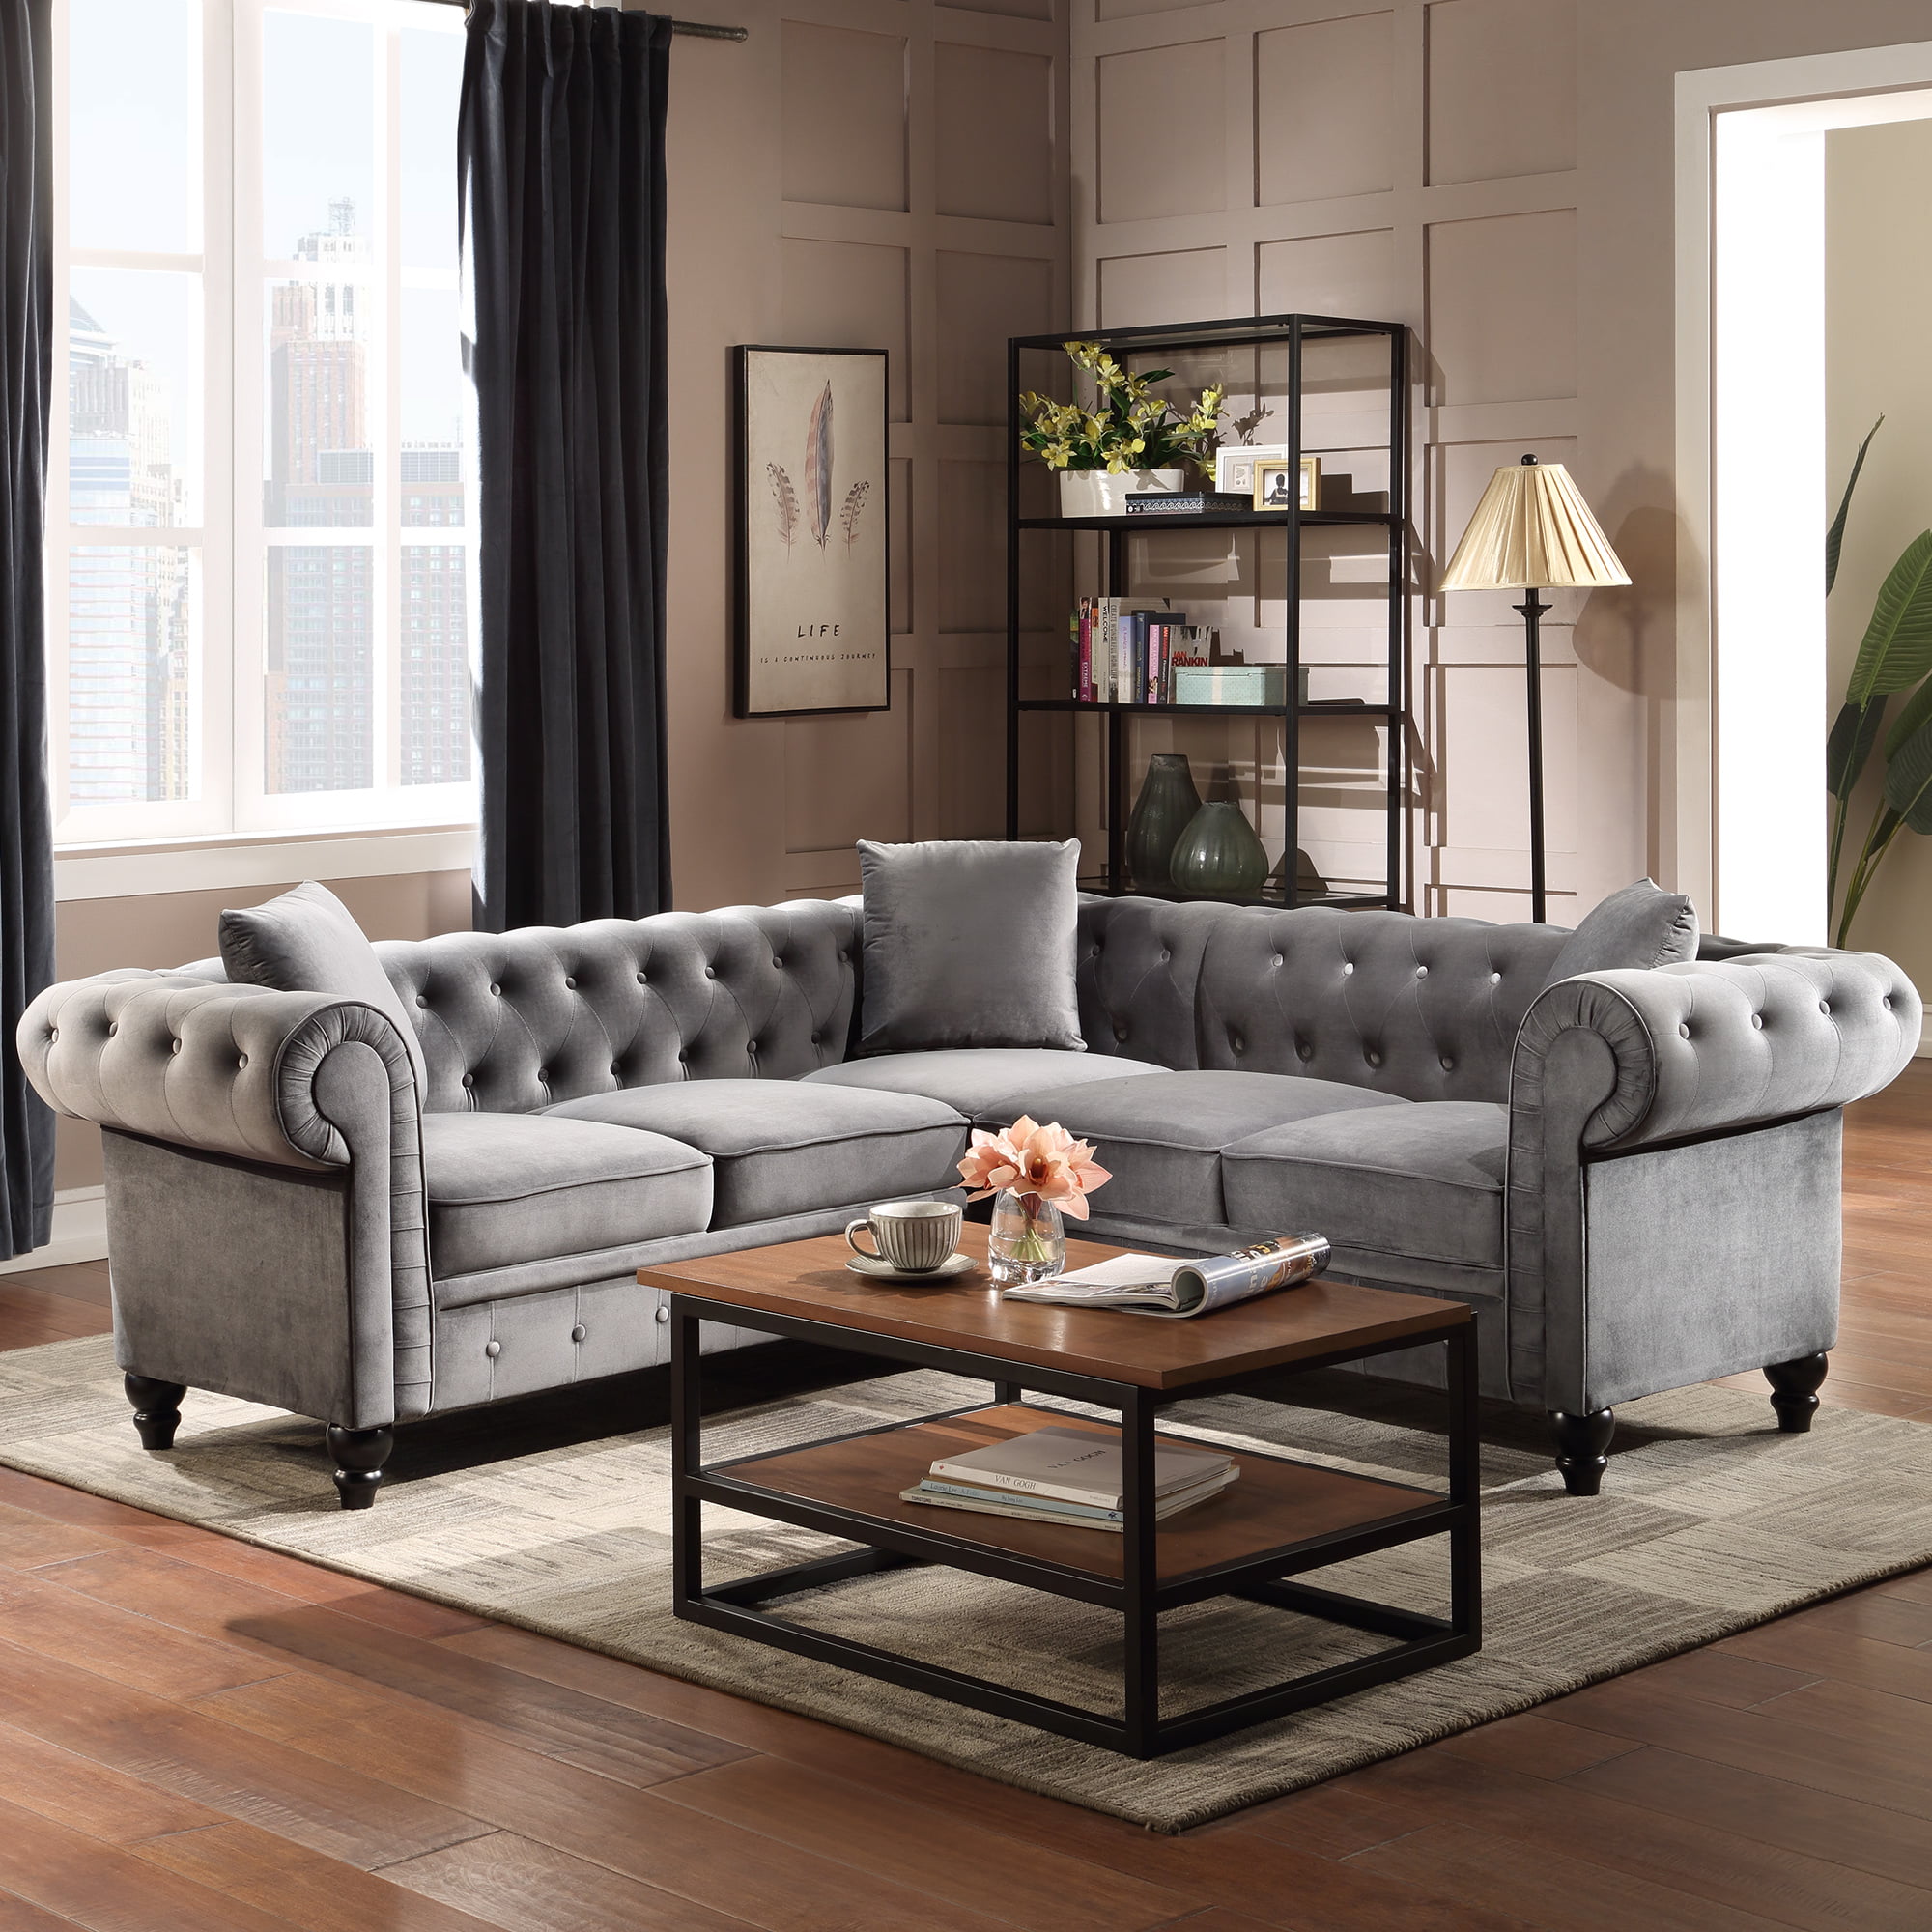 Velvet Tufted Sofa for Living Room, URHOMEPRO Mid Century